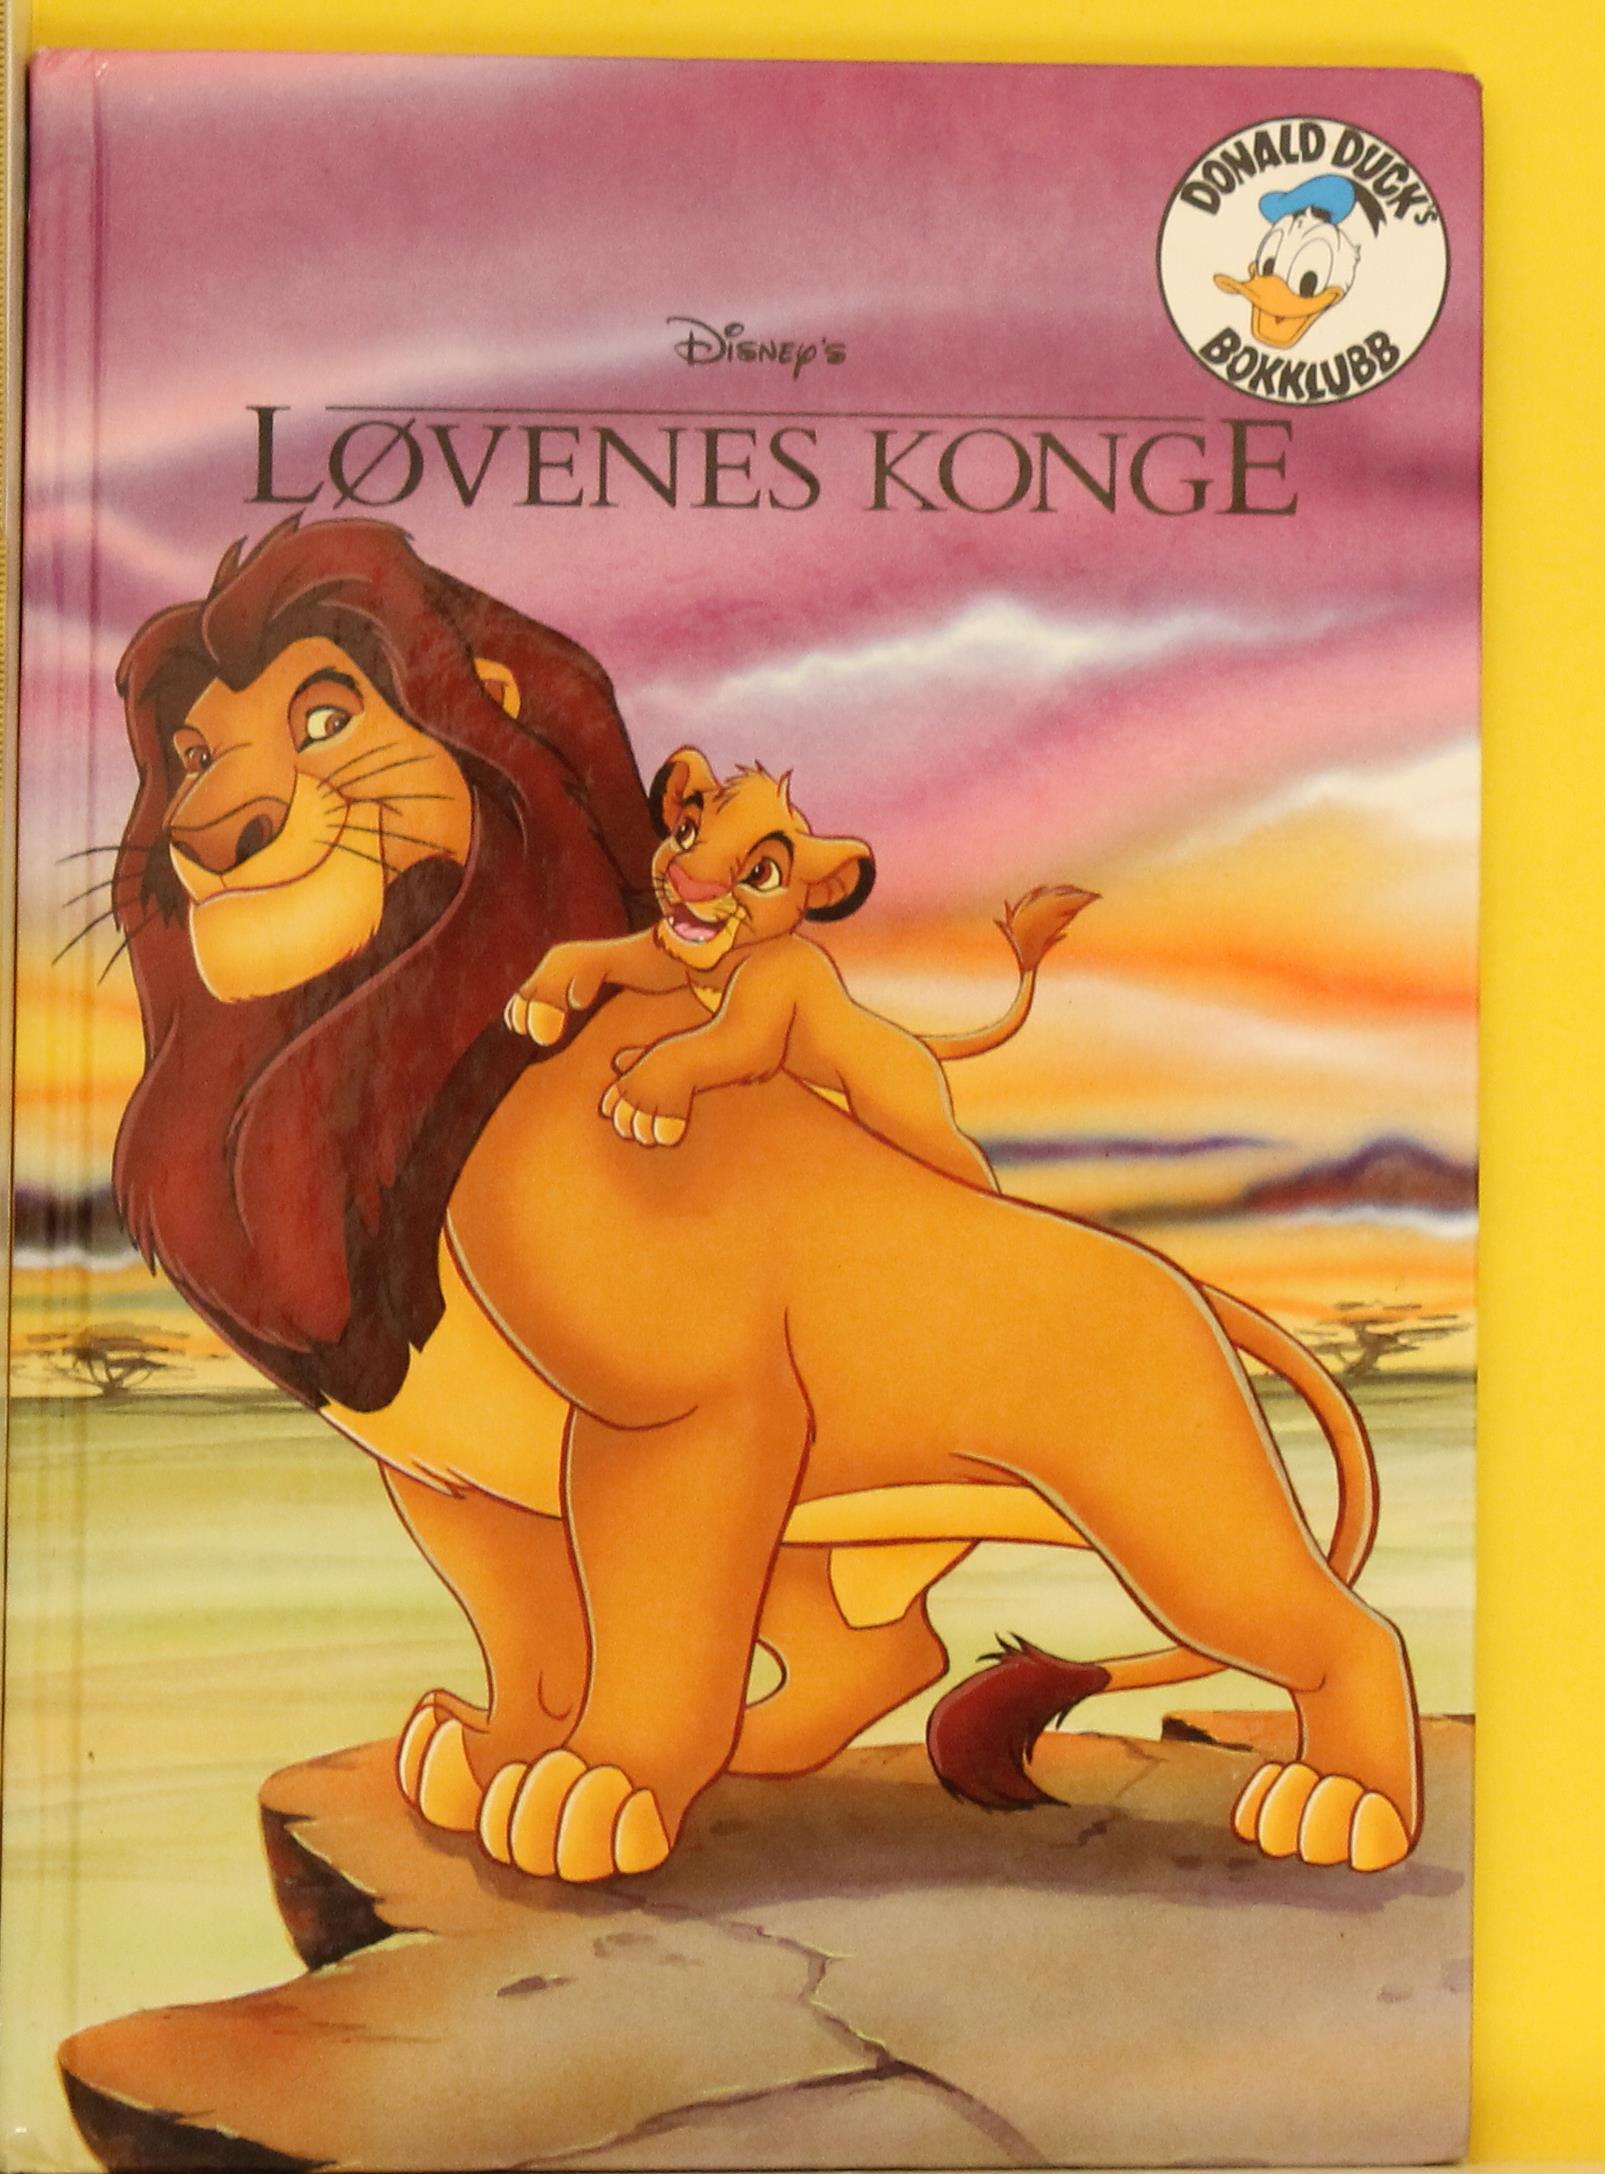 Disney's Løvenes konge